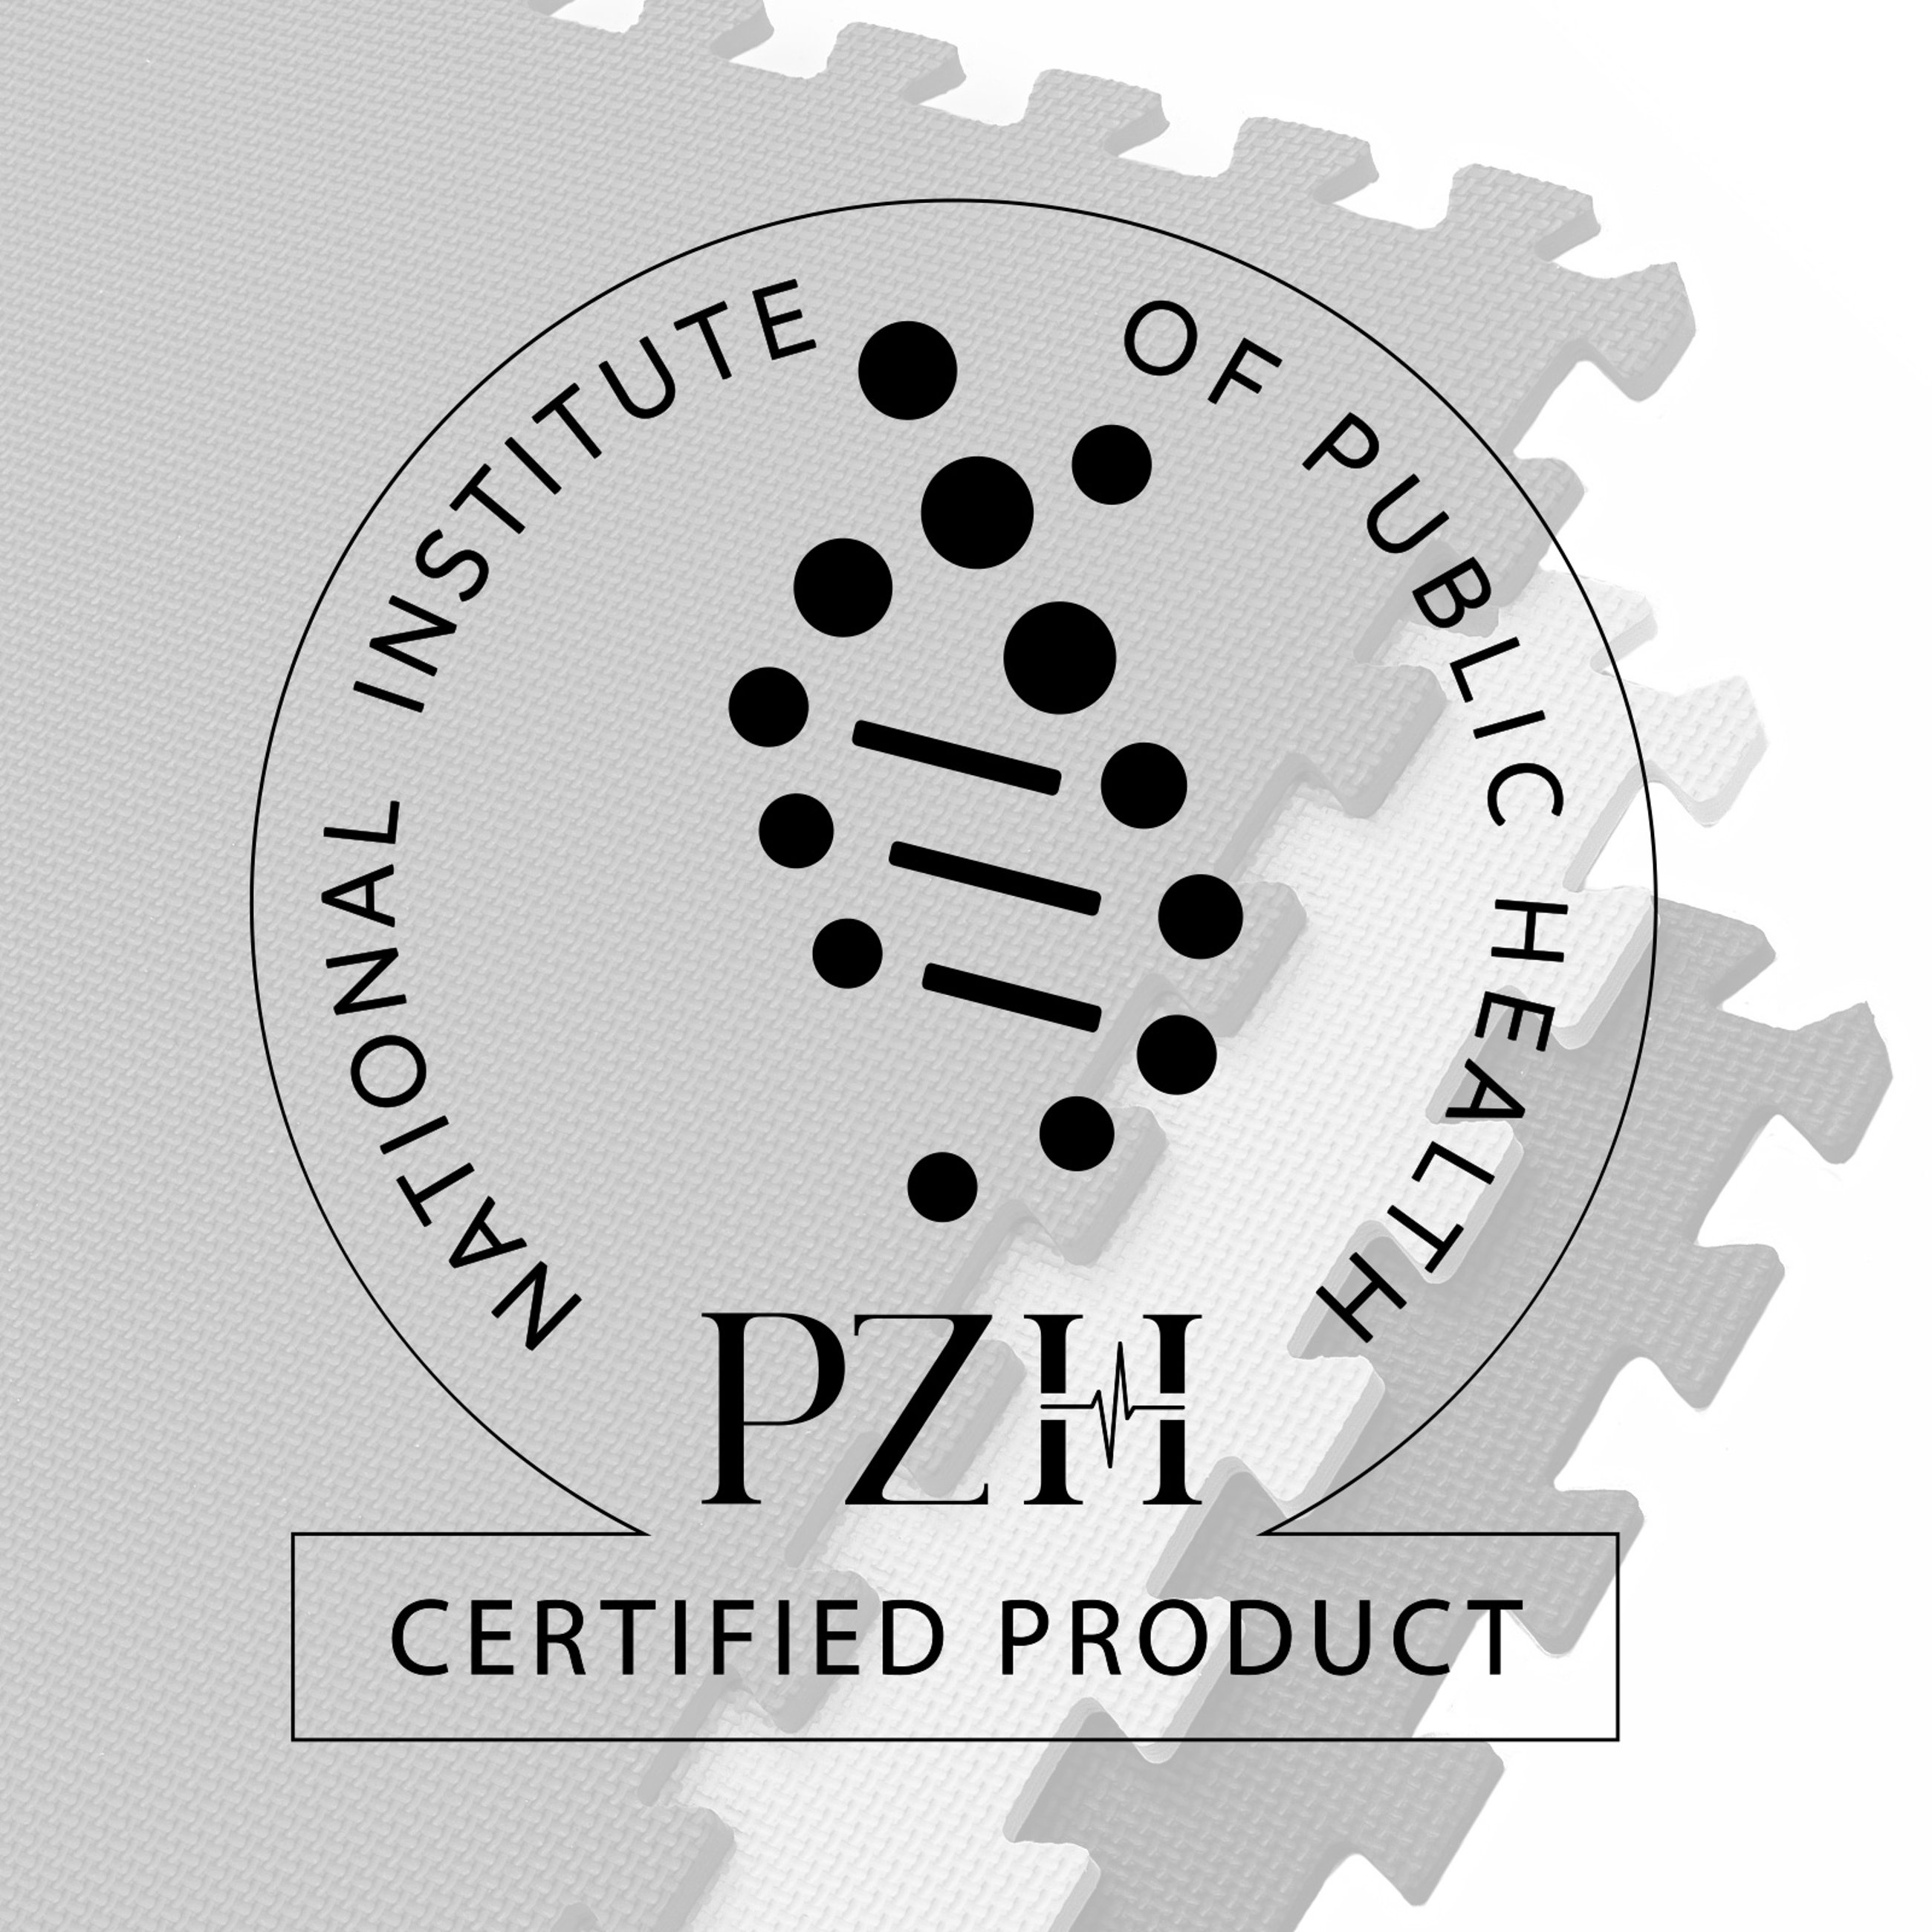 Unsere Puzzlematten HS-A010PM haben das NIZP PZH Zertifikat